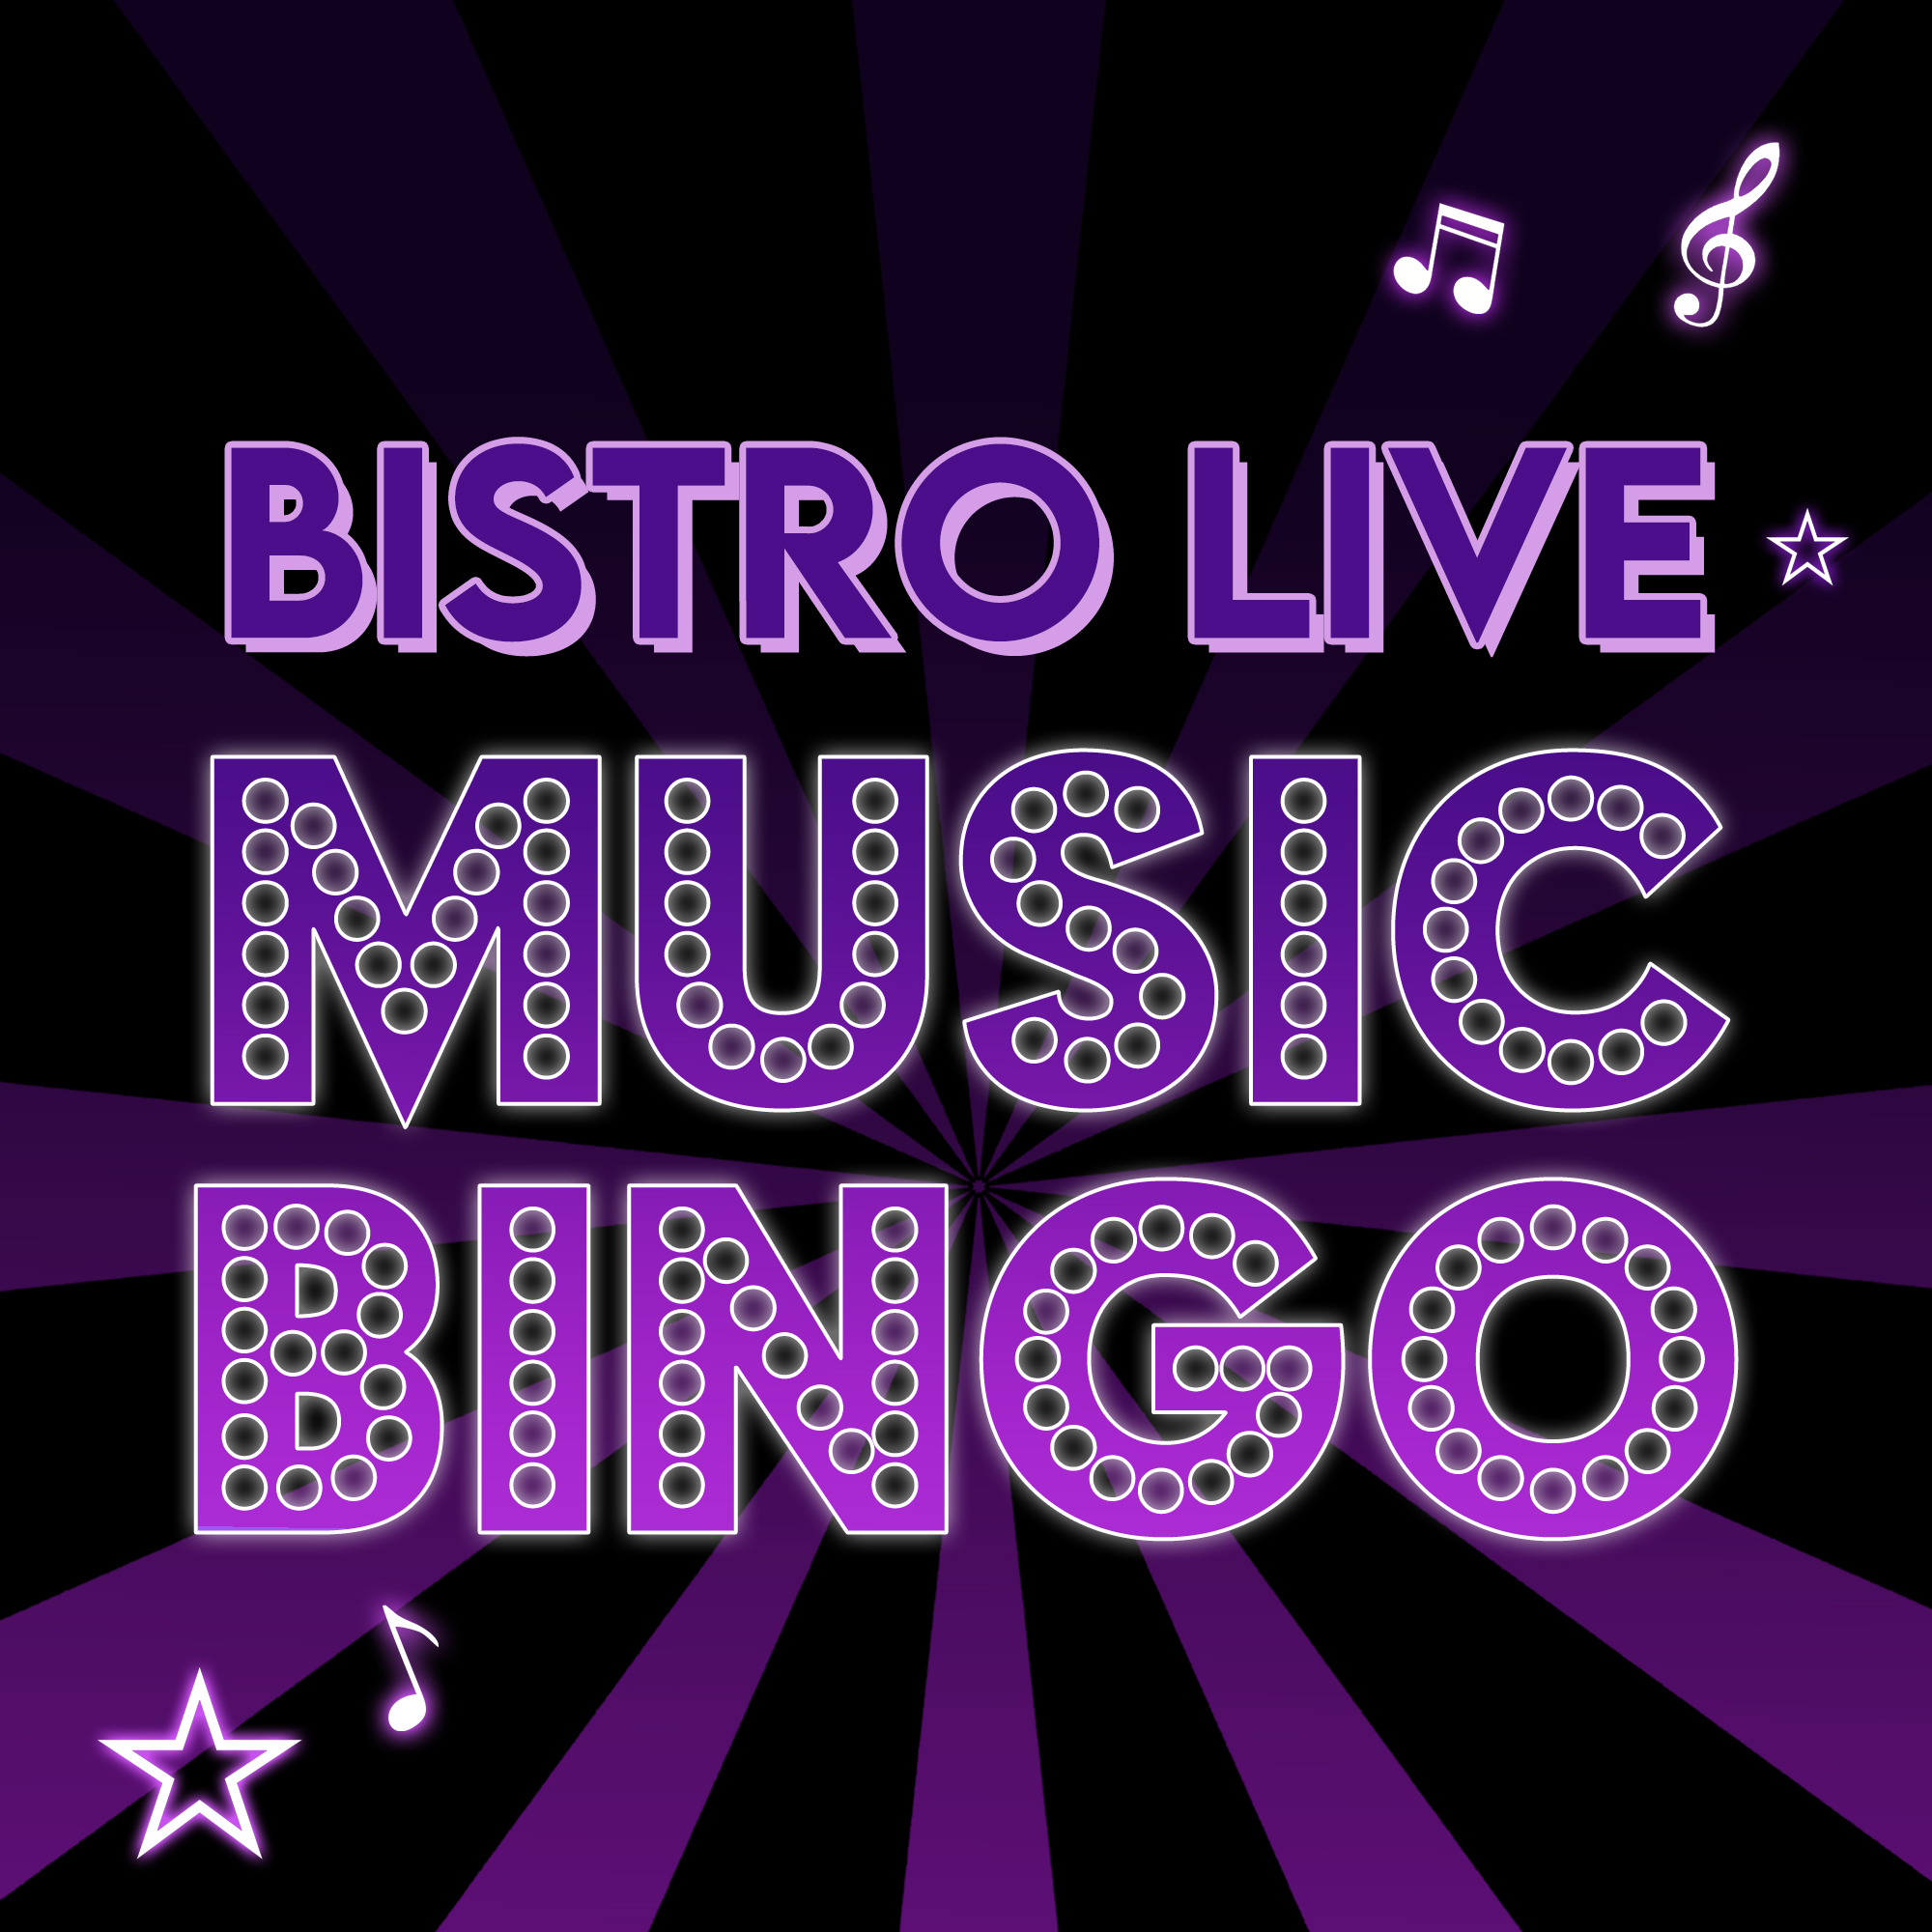 Bistro Live Music Bingo